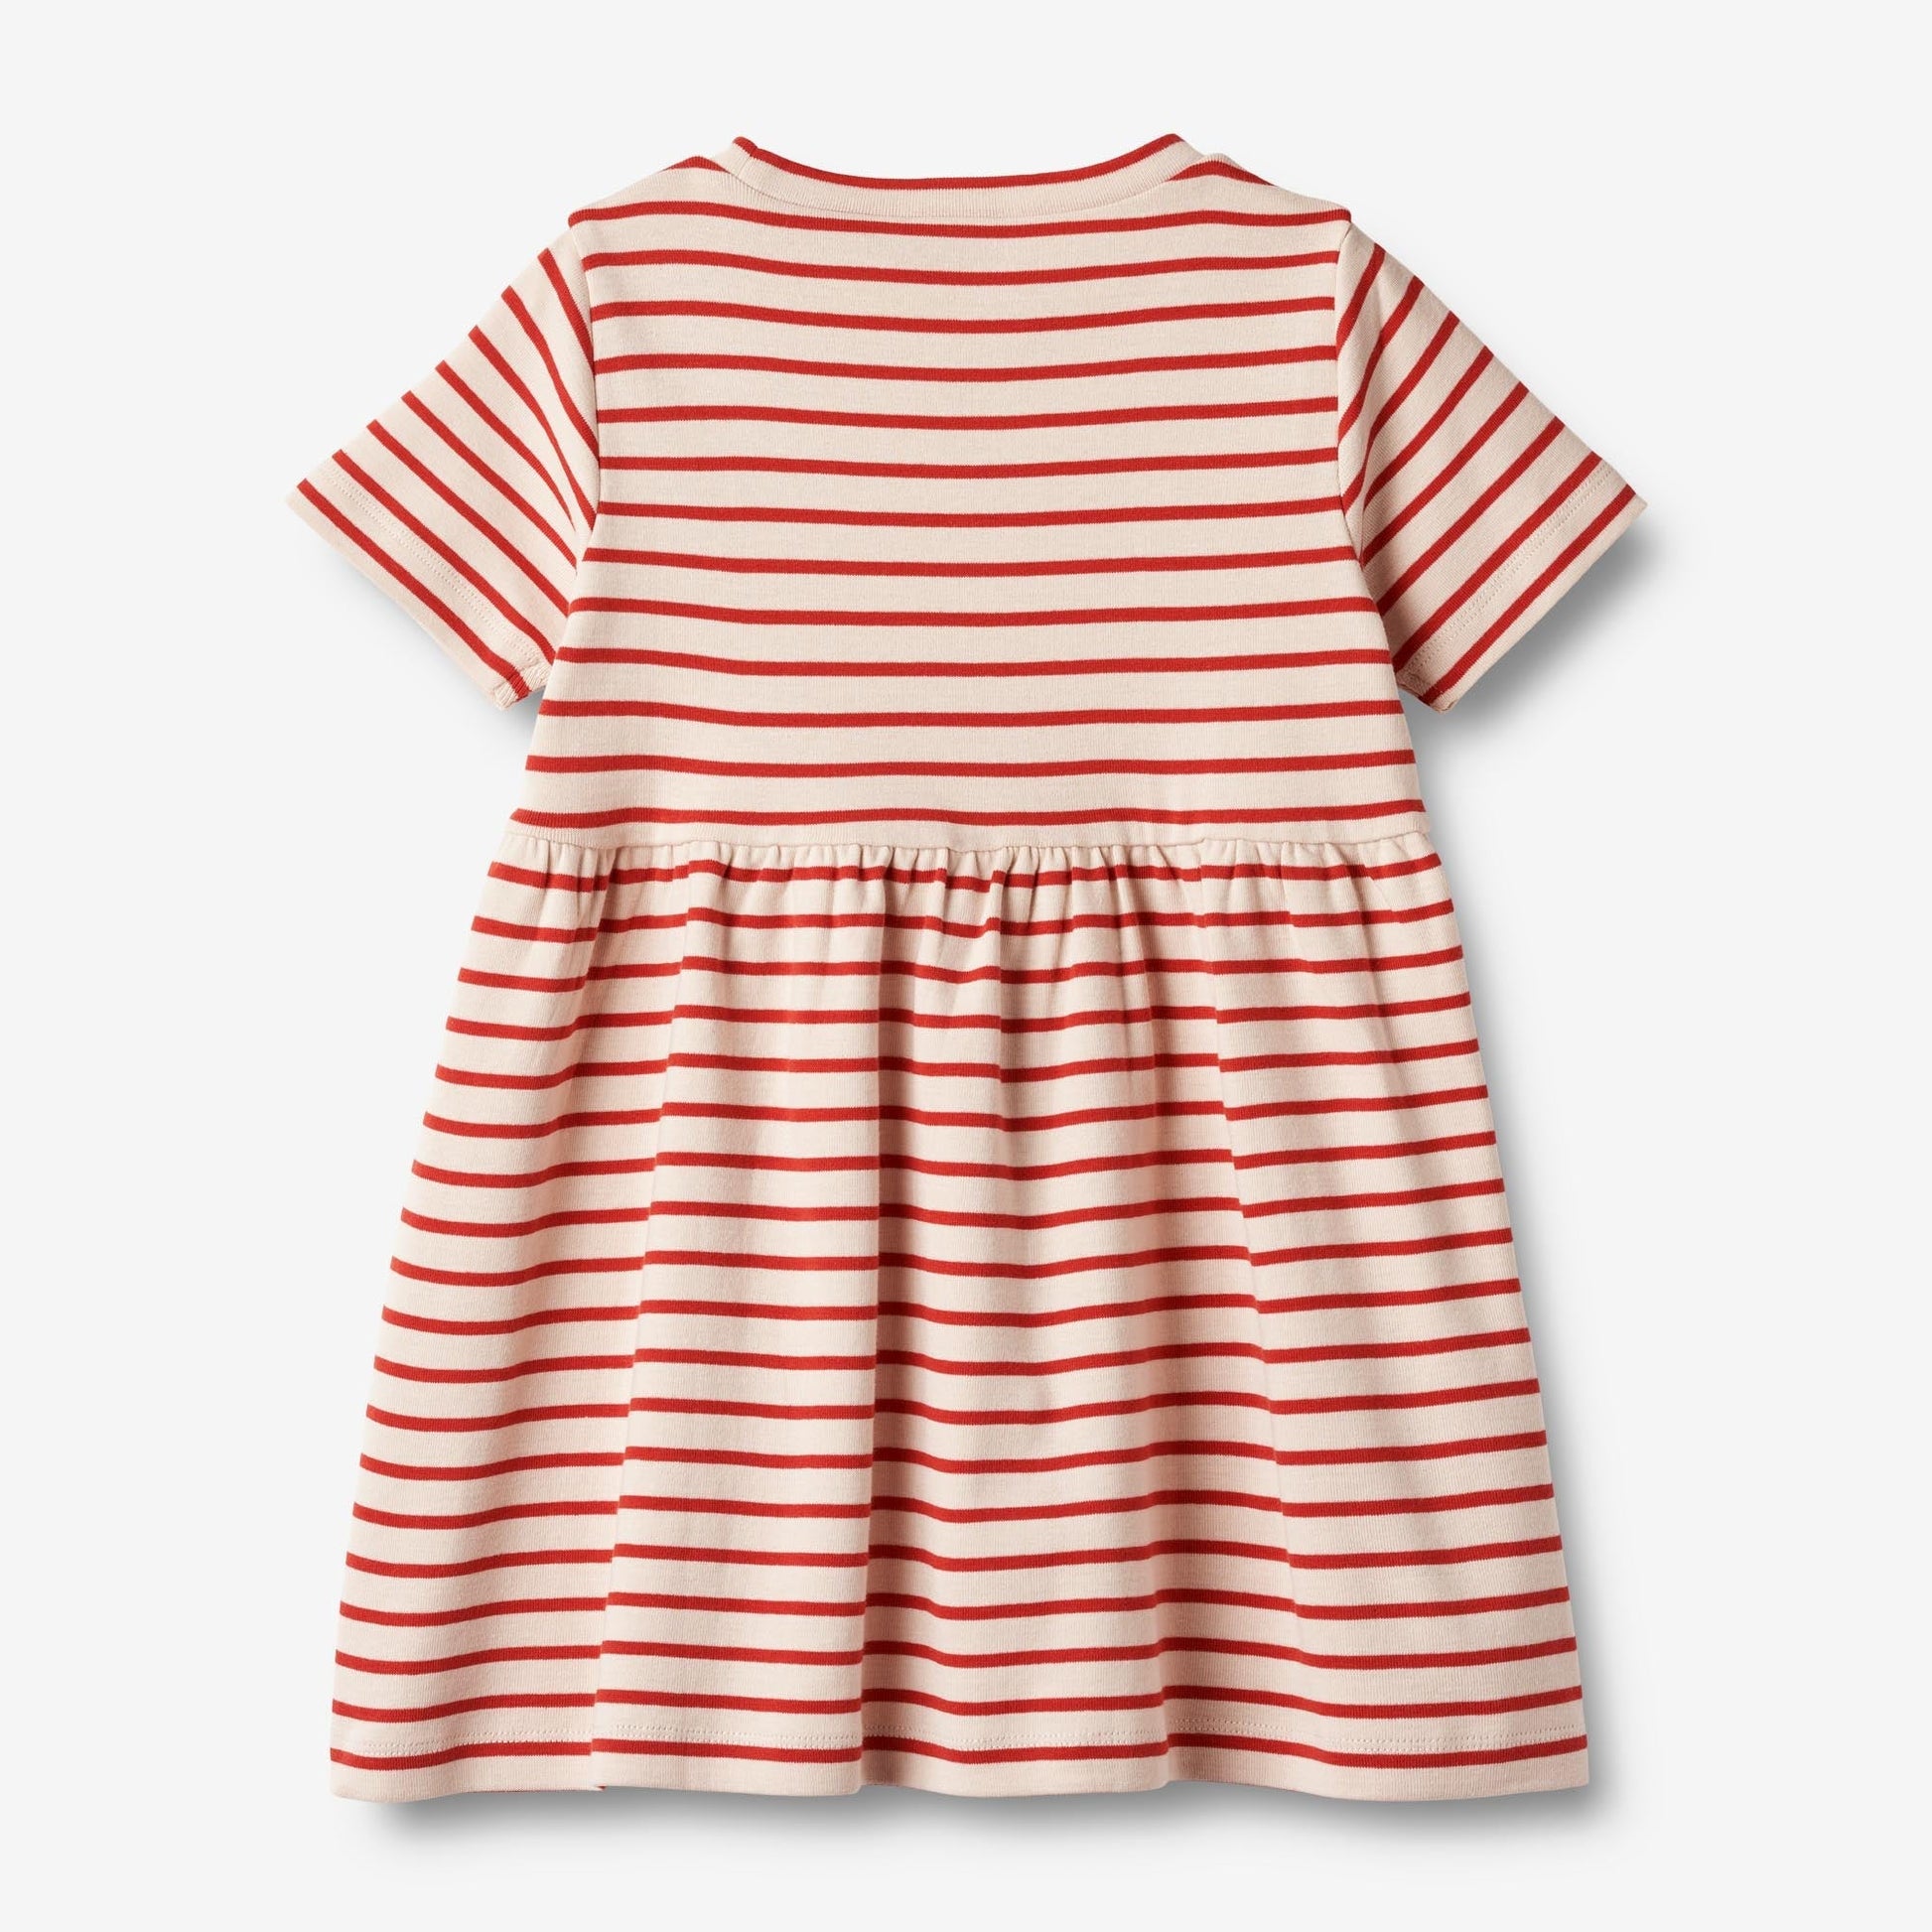 Wheat 'Anna' S/S Children's Jersey Dress - Red Stripe